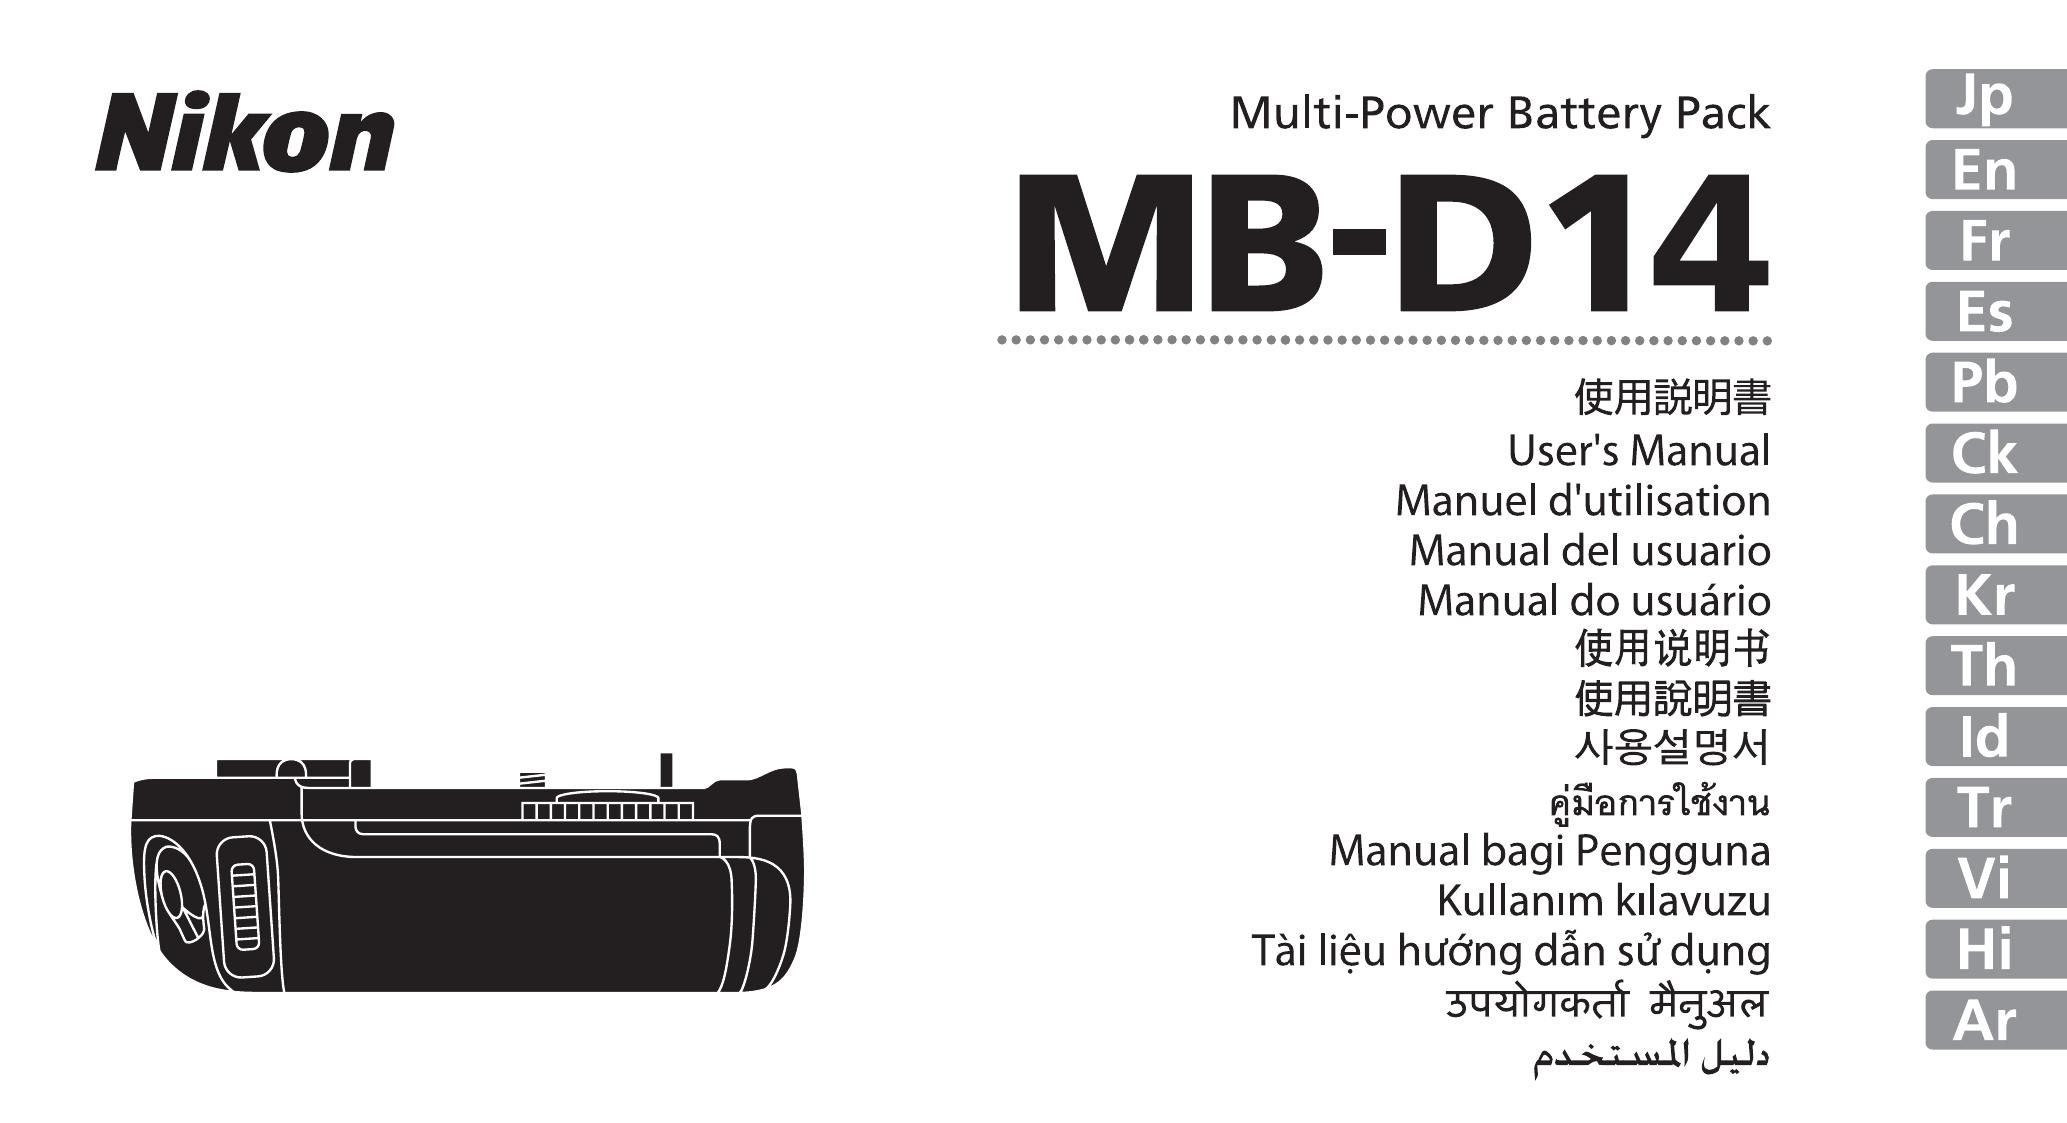 Nikon MB-D14 Camera Accessories User Manual